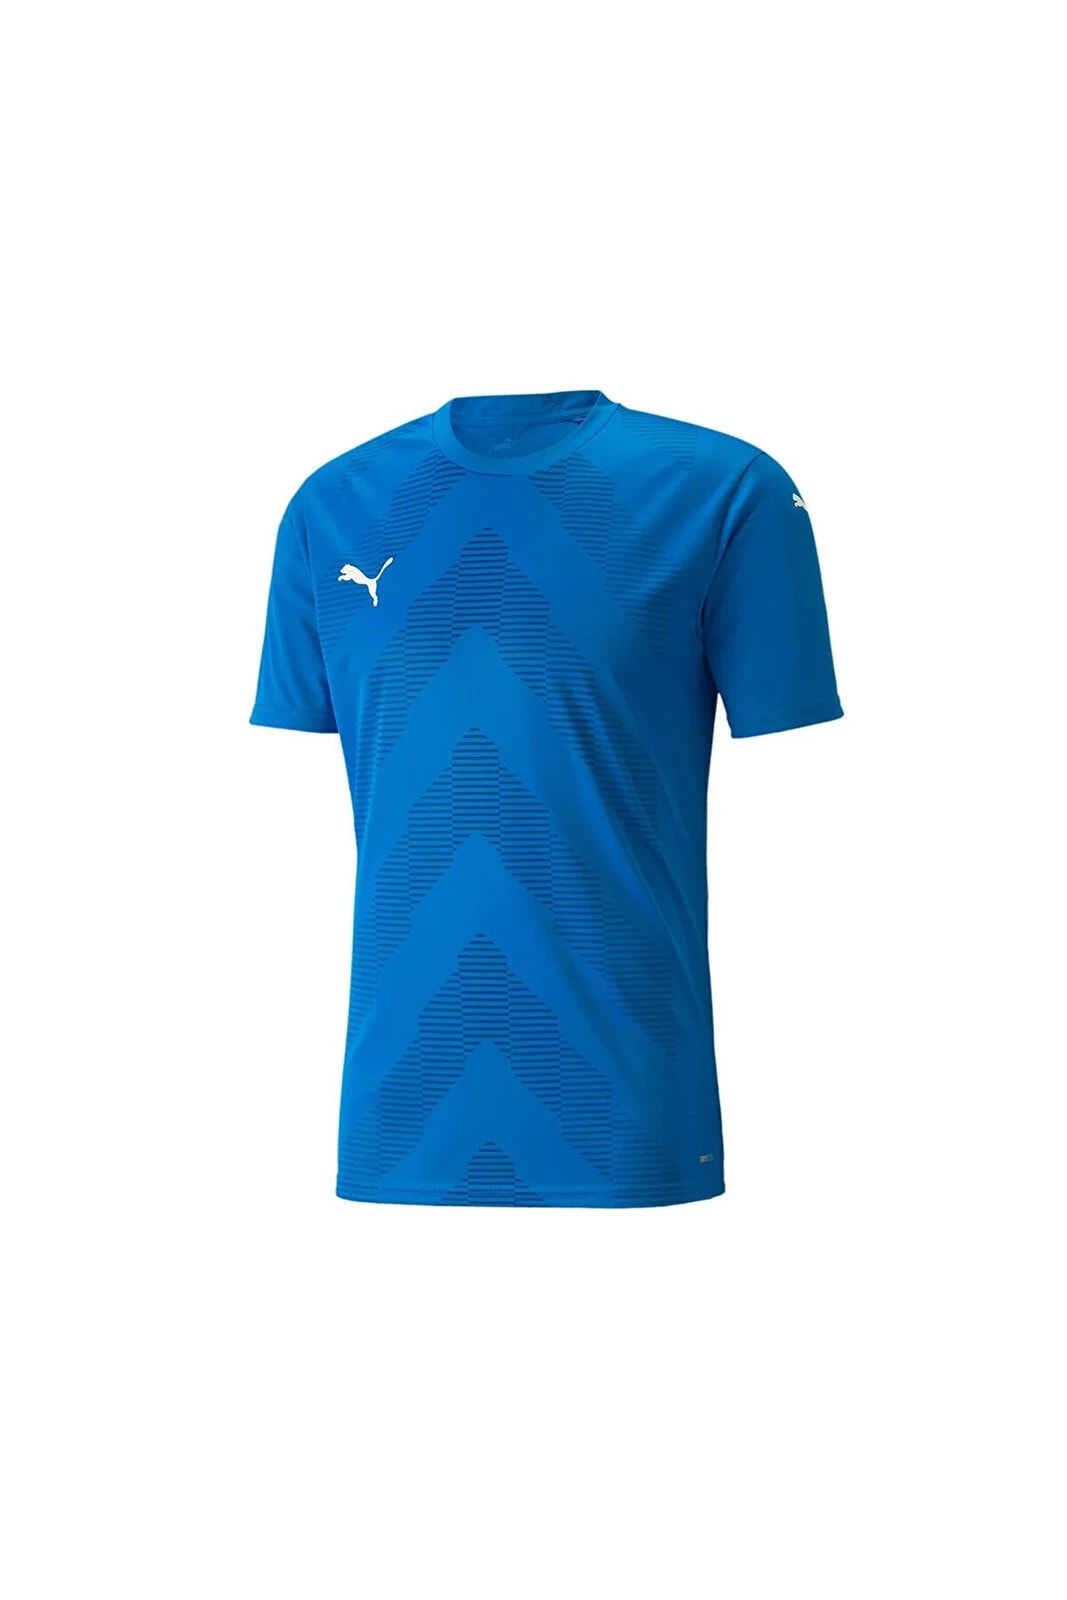 Teamglory Jersey Erkek Futbol Forması 70501702 Mavi